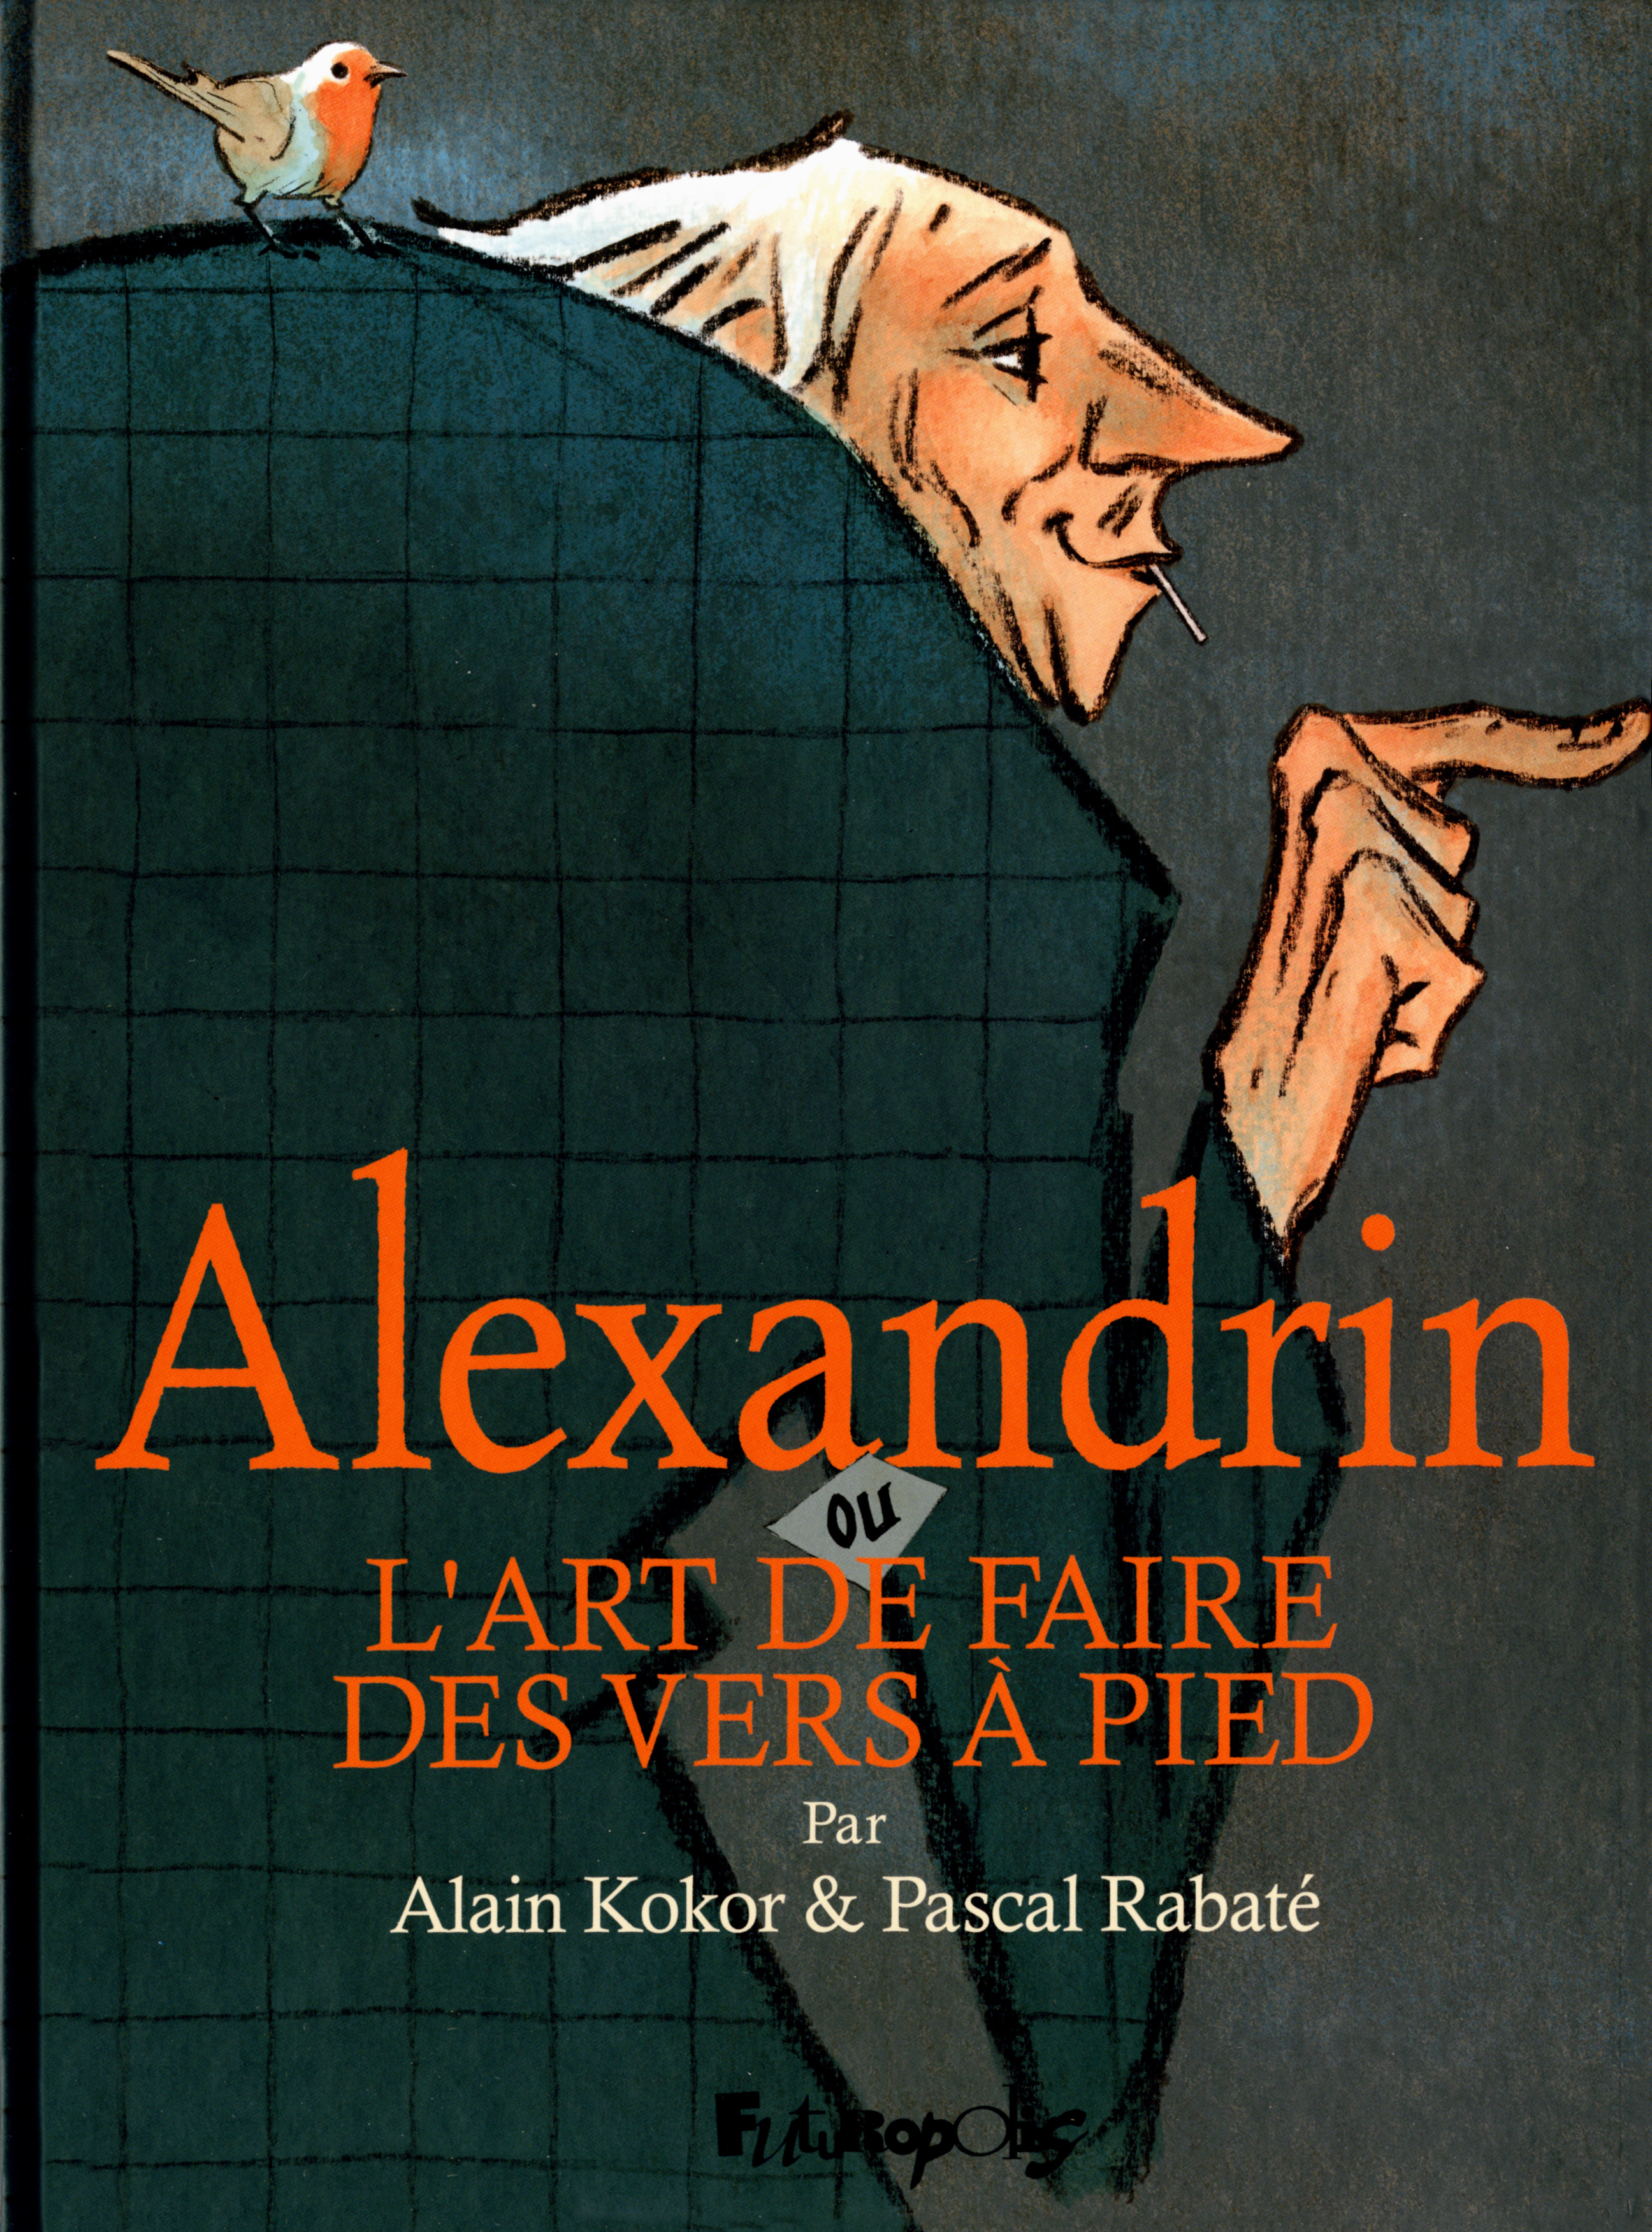 Alexandrin ou L’art de faire des vers à pied de Pascal Rabaté et Alain Kokor © Futuropolis, 2017.